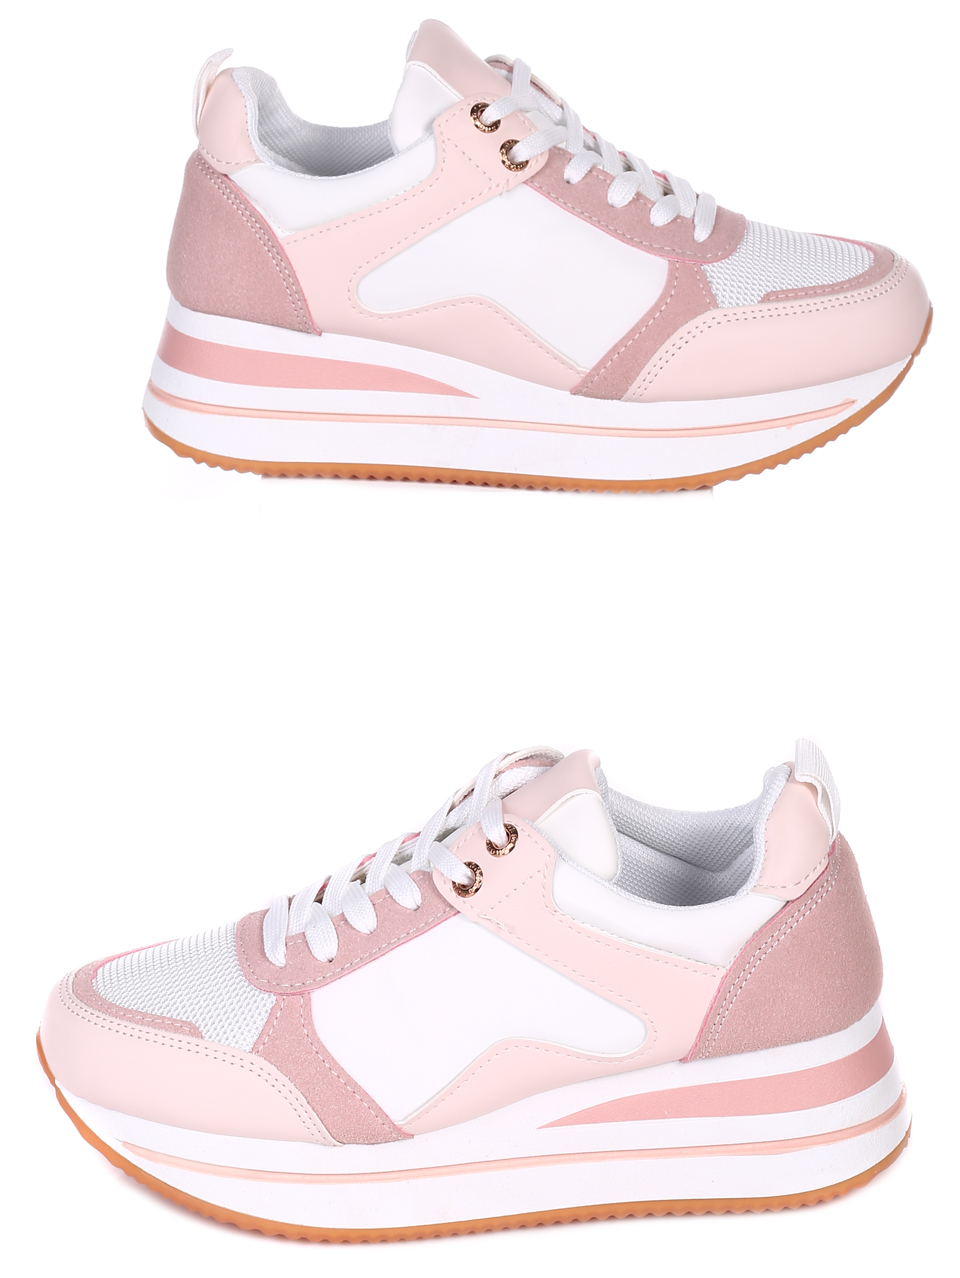 Ежедневни дамски обувки на платформа в розово 3U-22027 pink